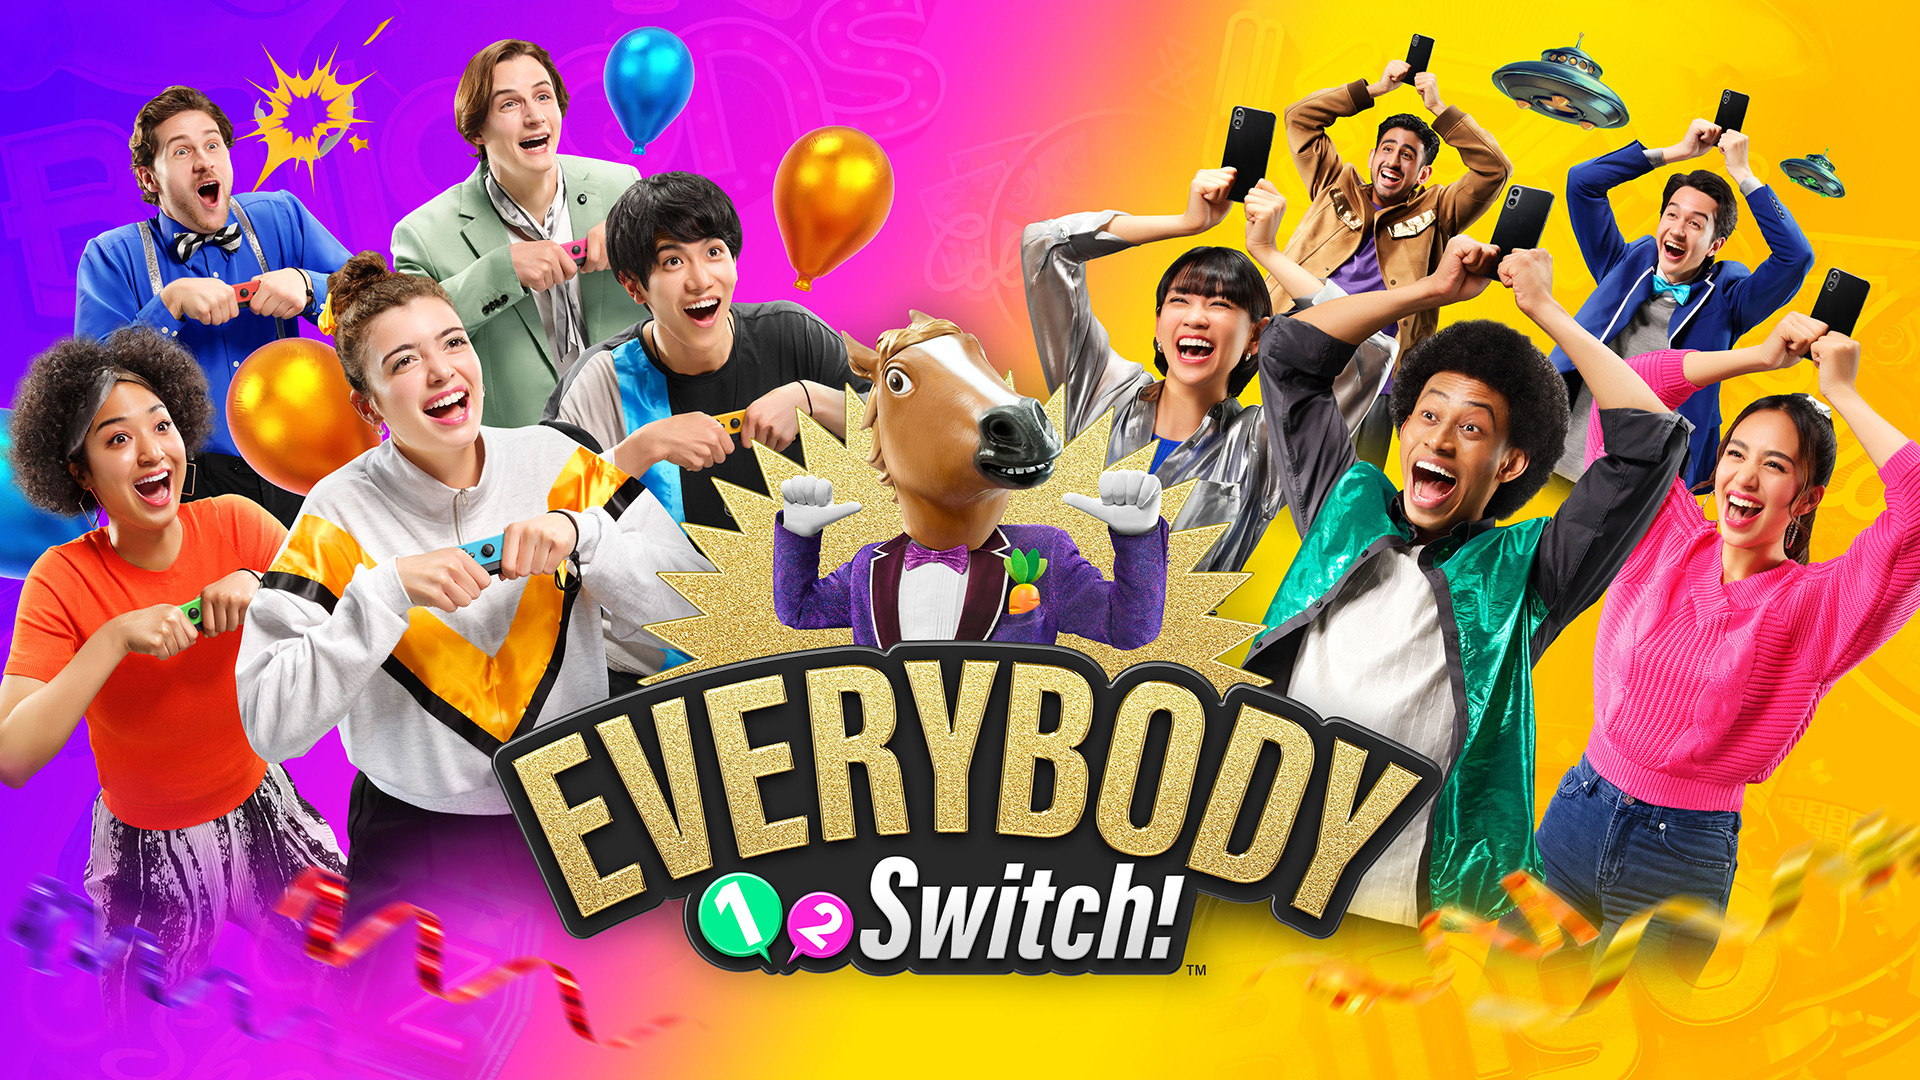 Everybody 1-2 Switch! (Nintendo Switch) BRAND NEW